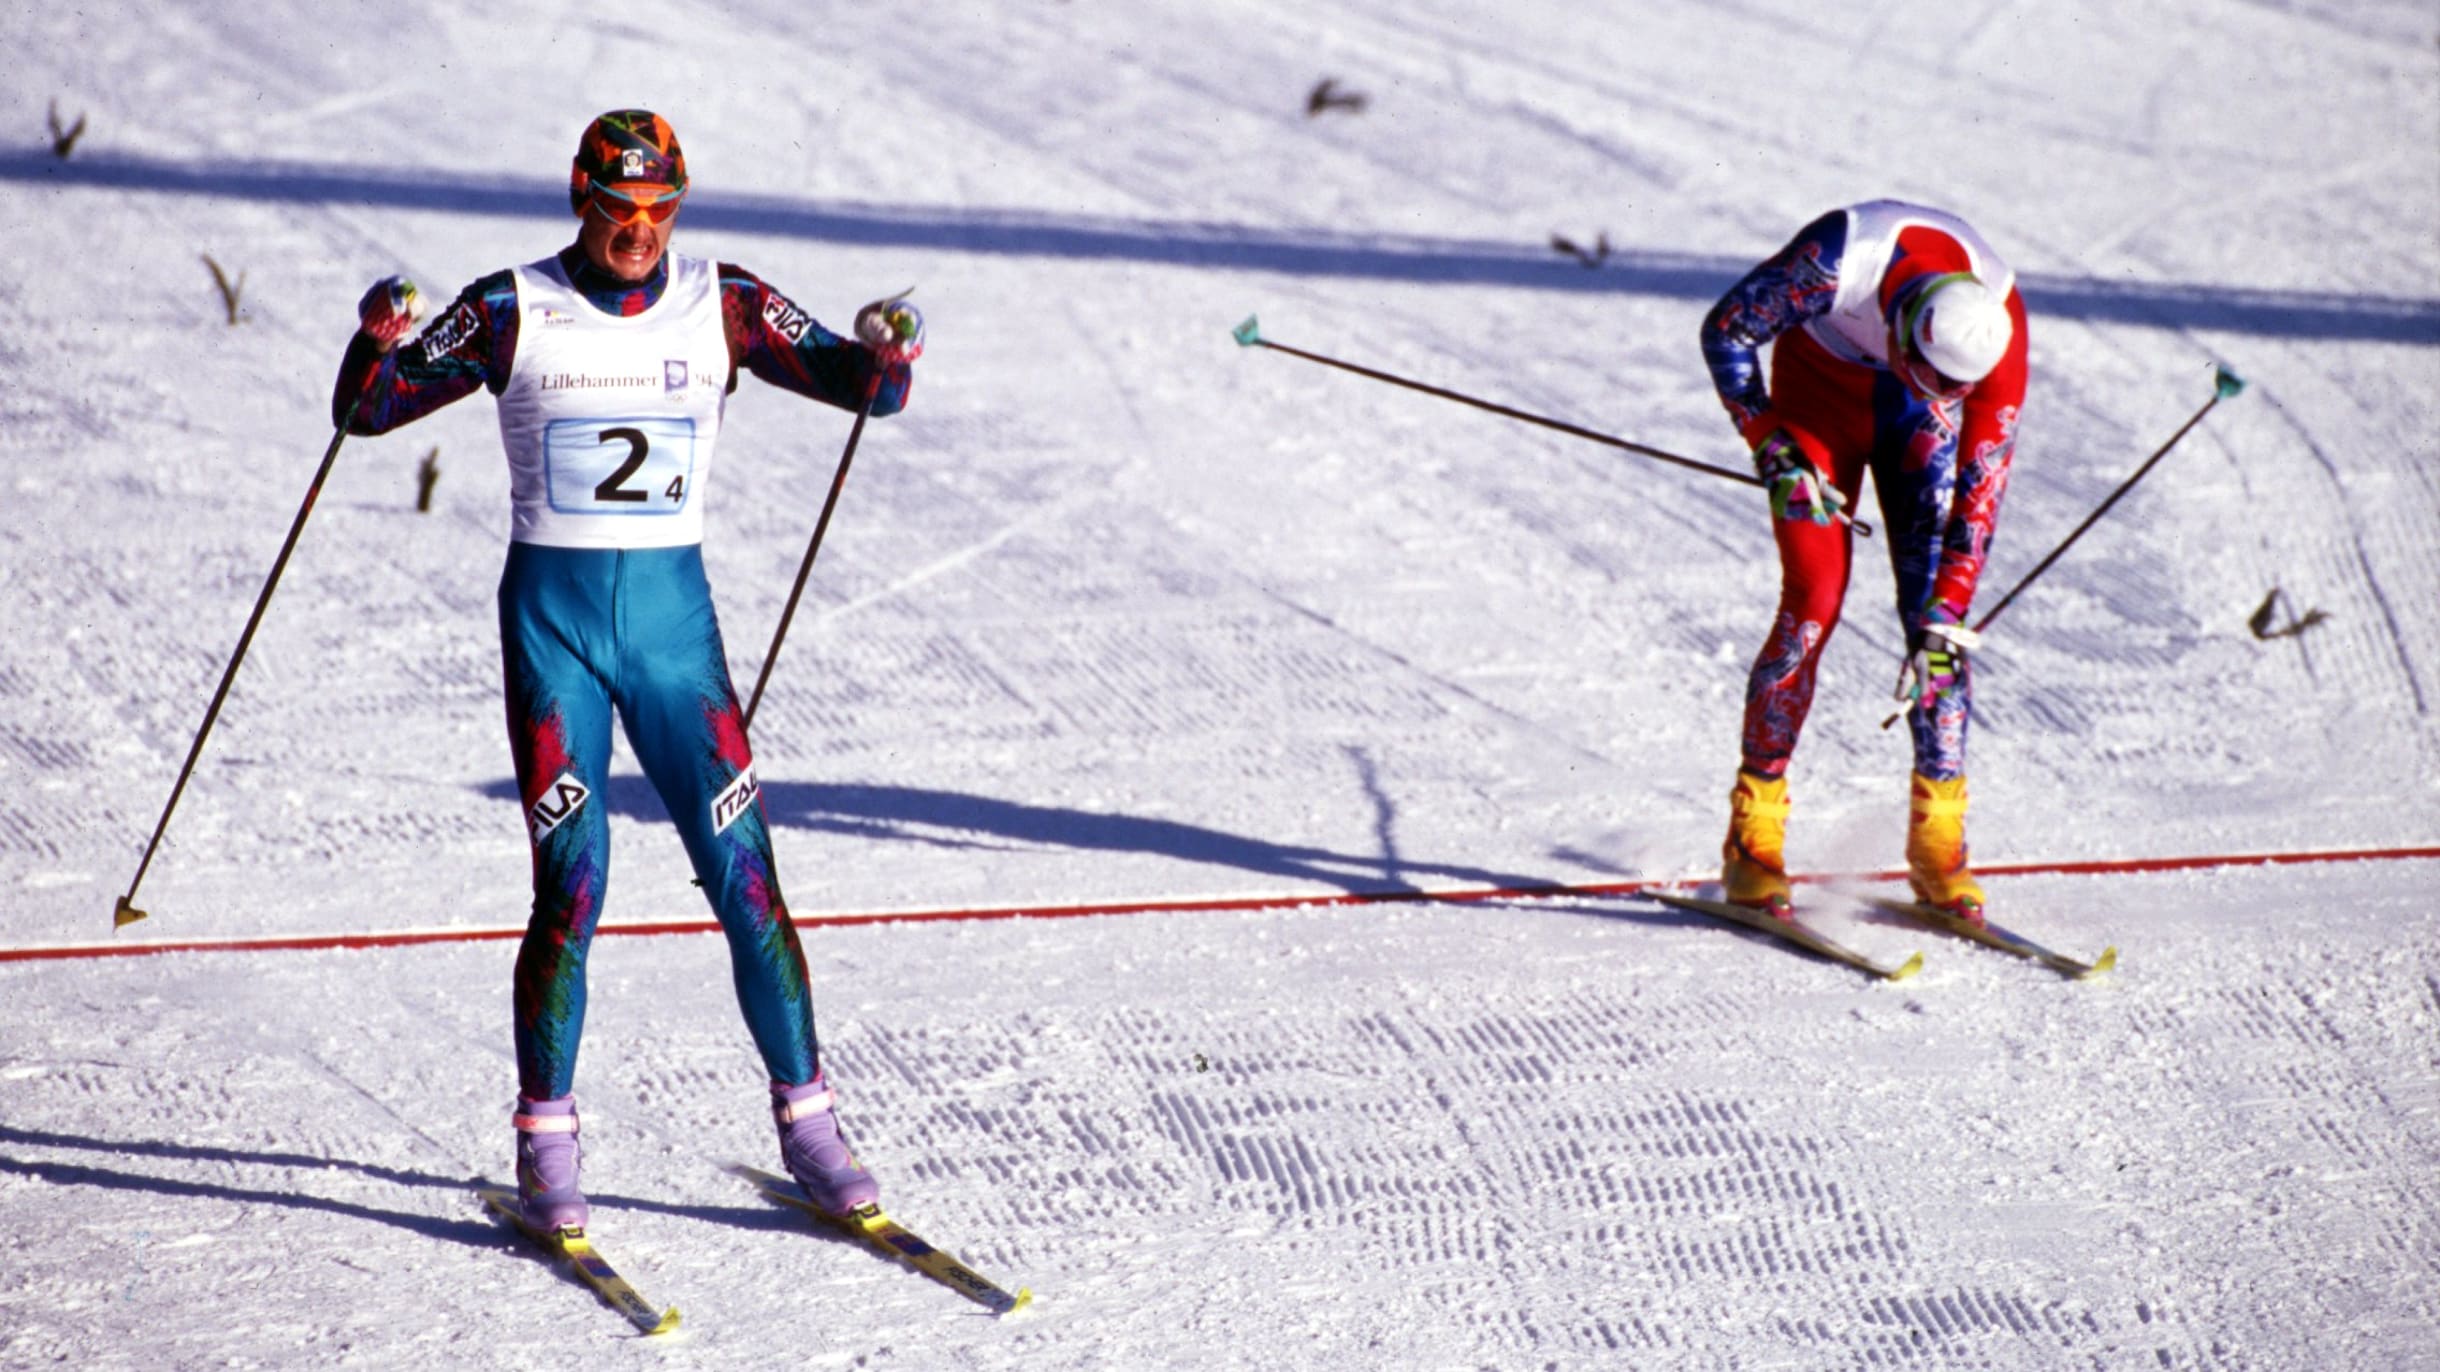 クロスカントリースキー界を席巻した1990年代のノルウェーとイタリア